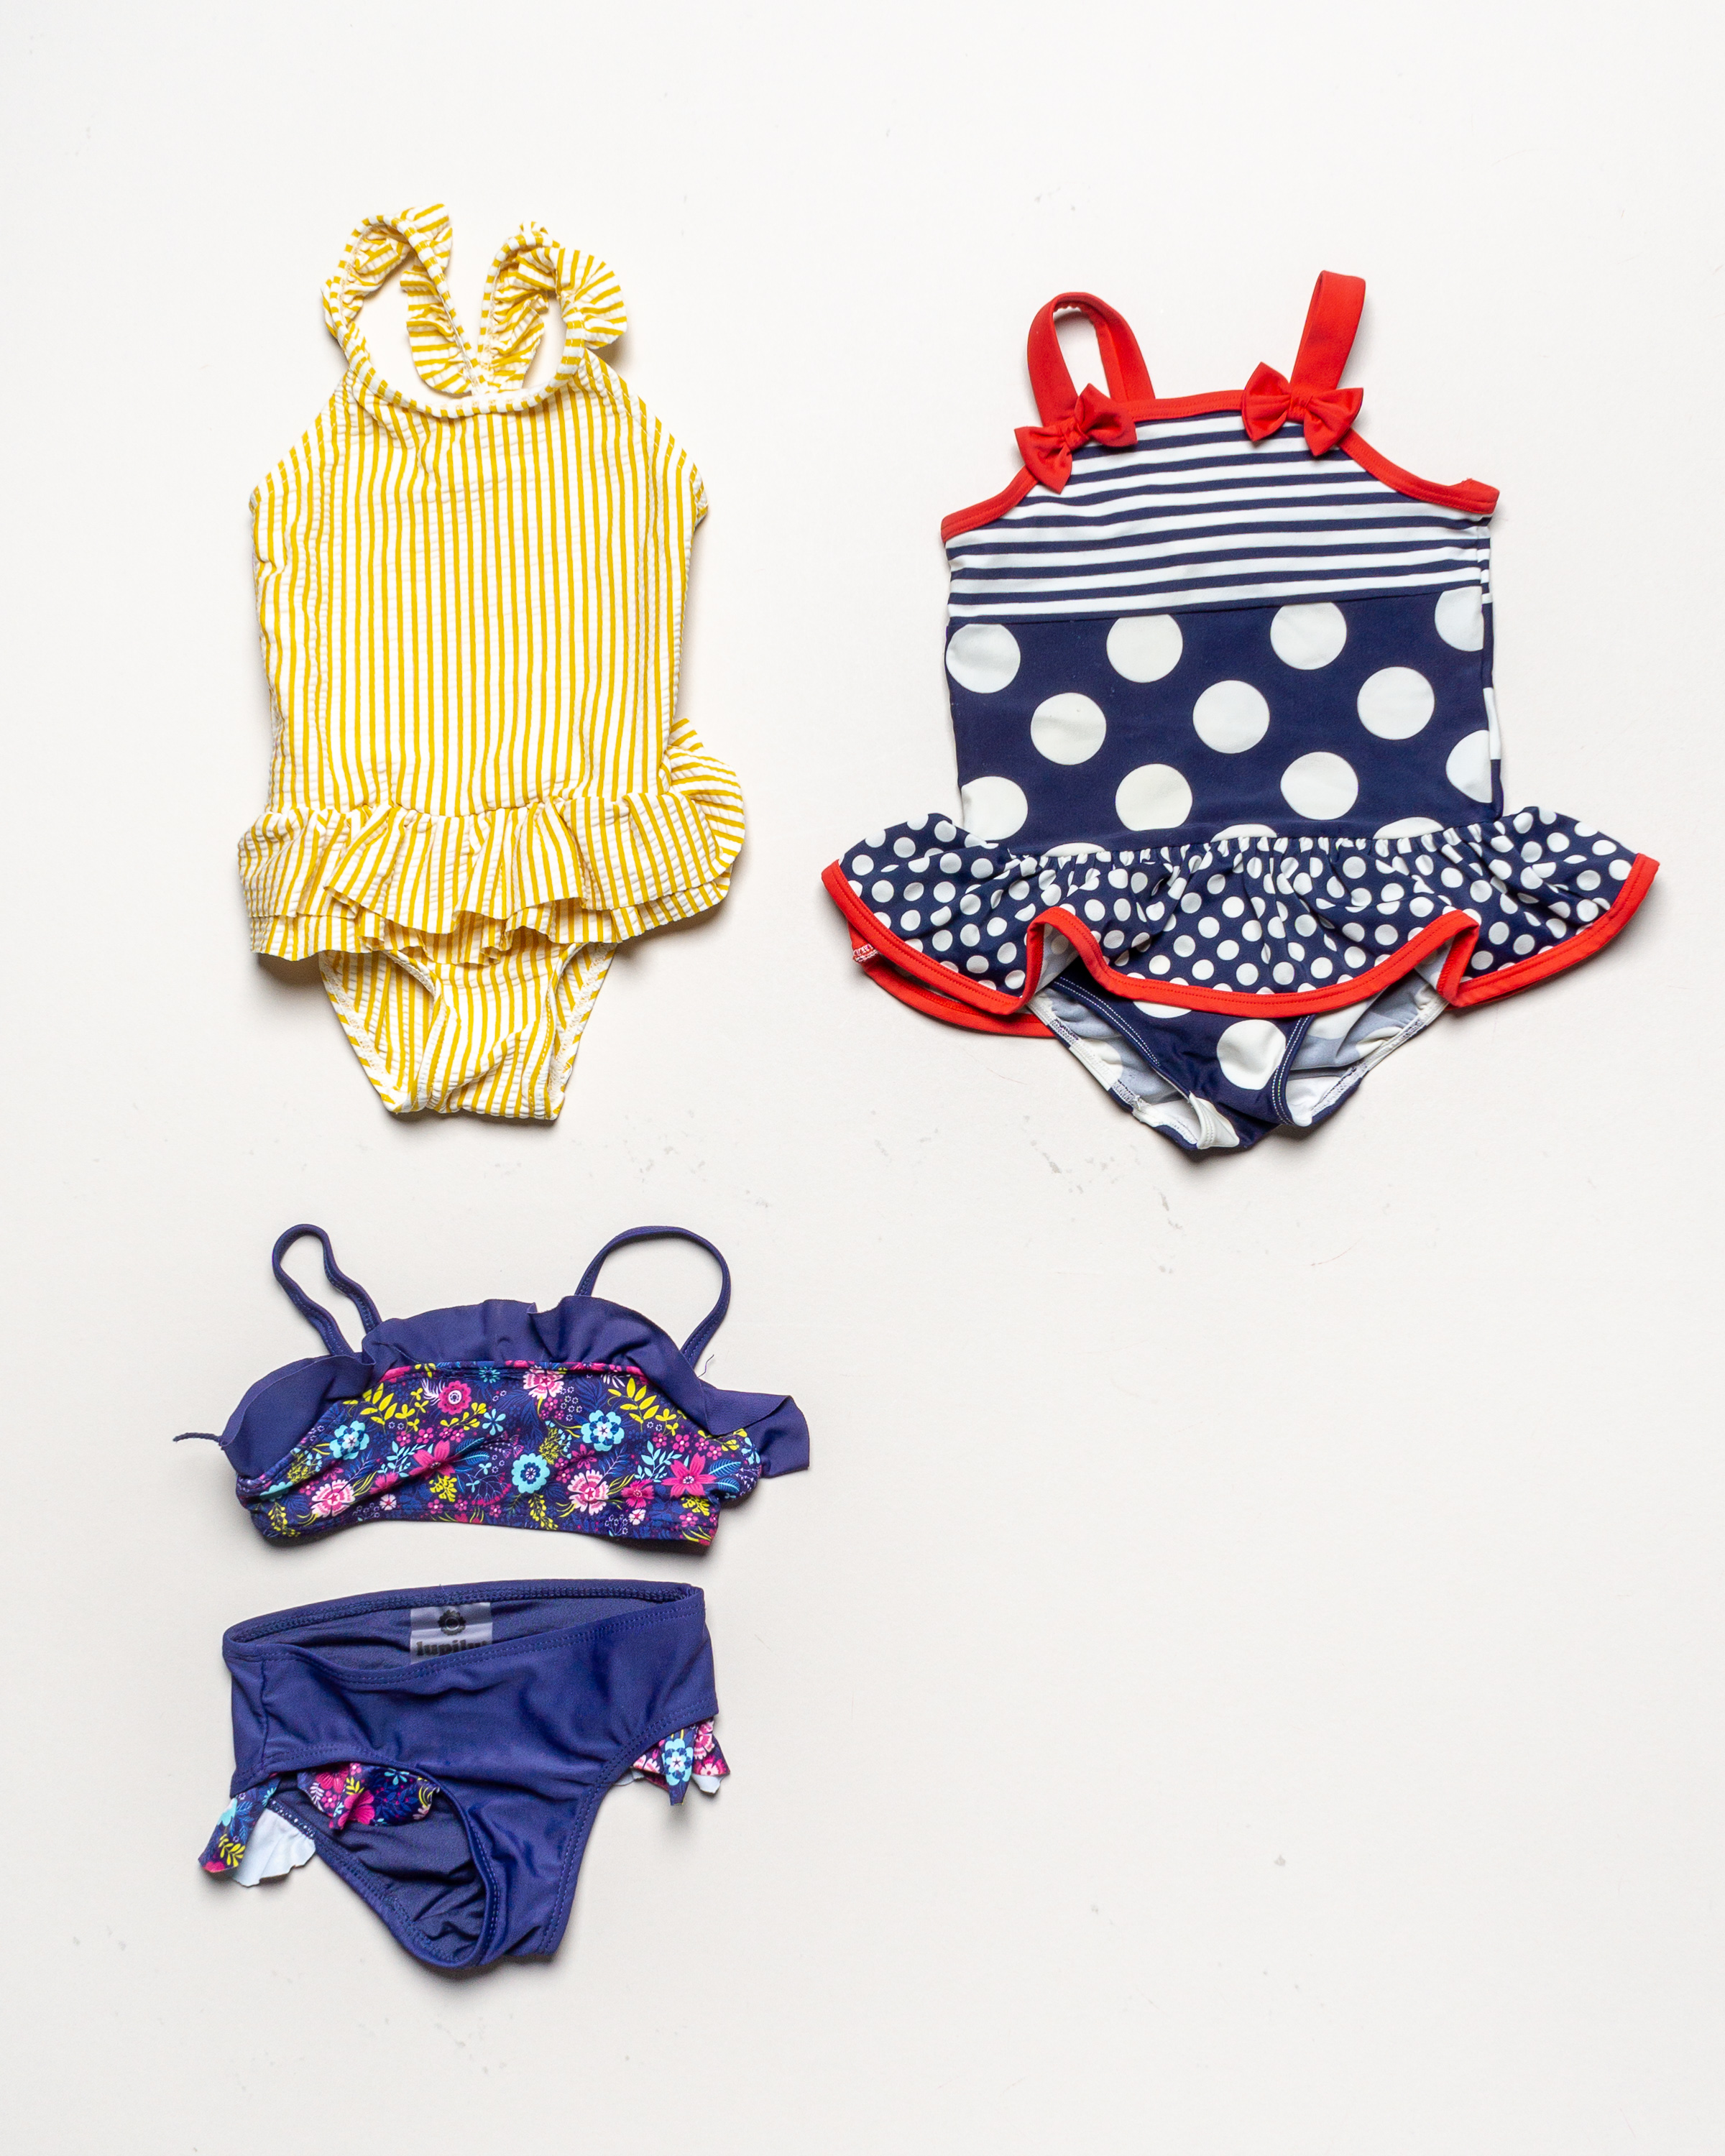 1x Badekleidung Gr. 86/92 – Schwimmsachen Badeanzug Bikini Streifen Blumen Floral Blau Gelb